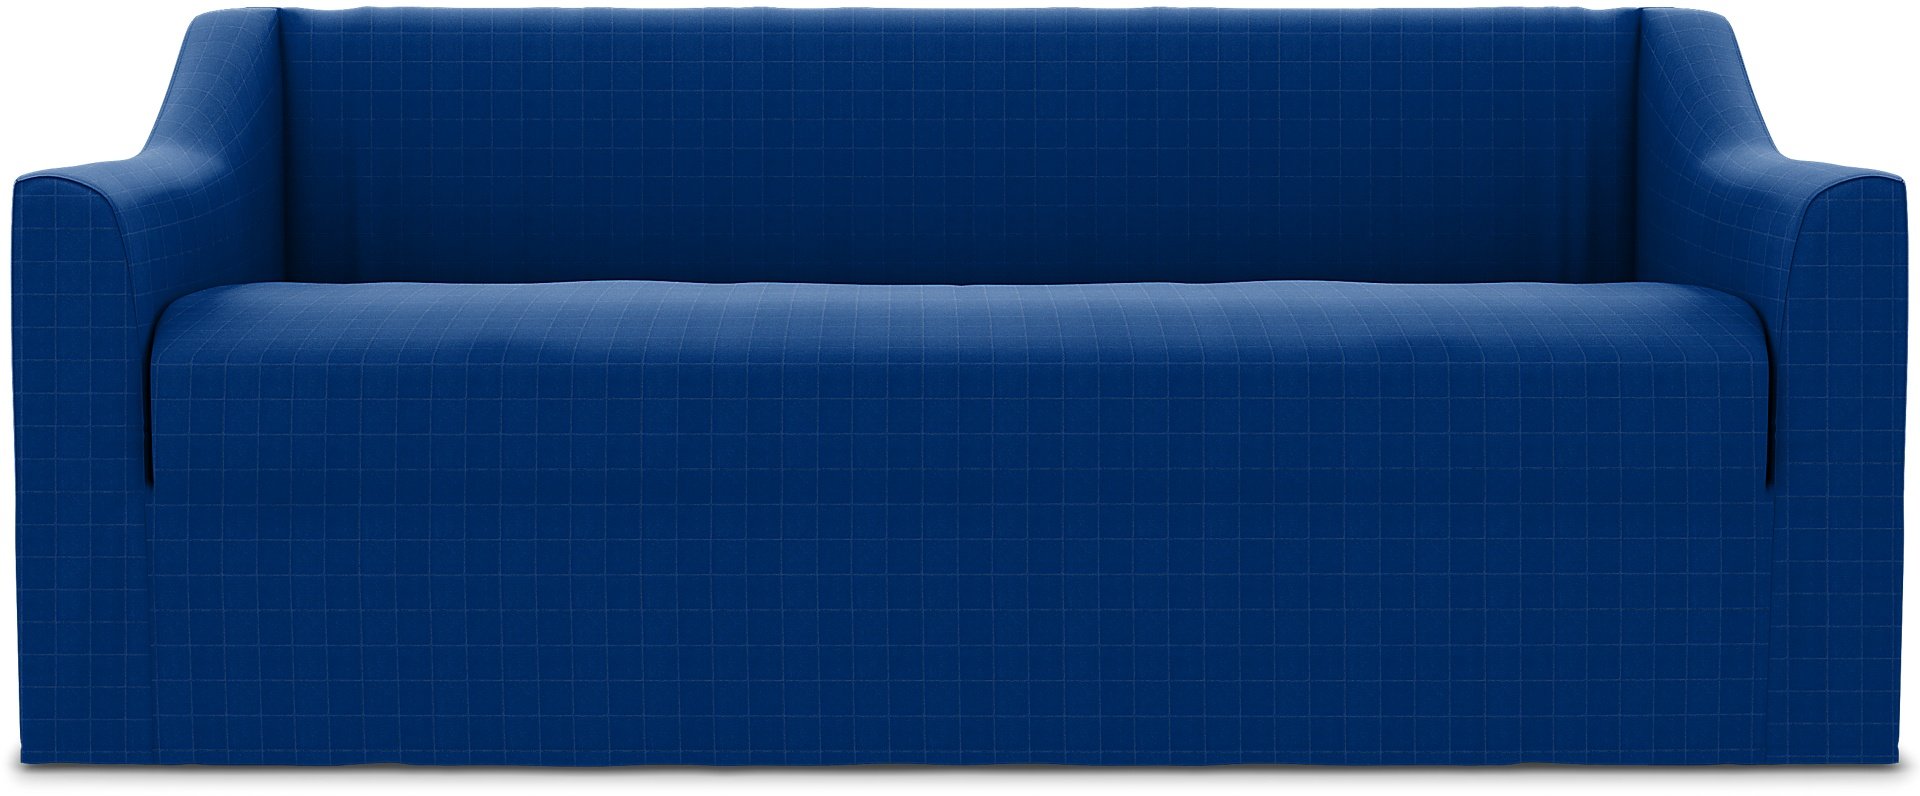 Farlov 2 Seater Sofa Cover, Lapis Blue, Velvet - Bemz